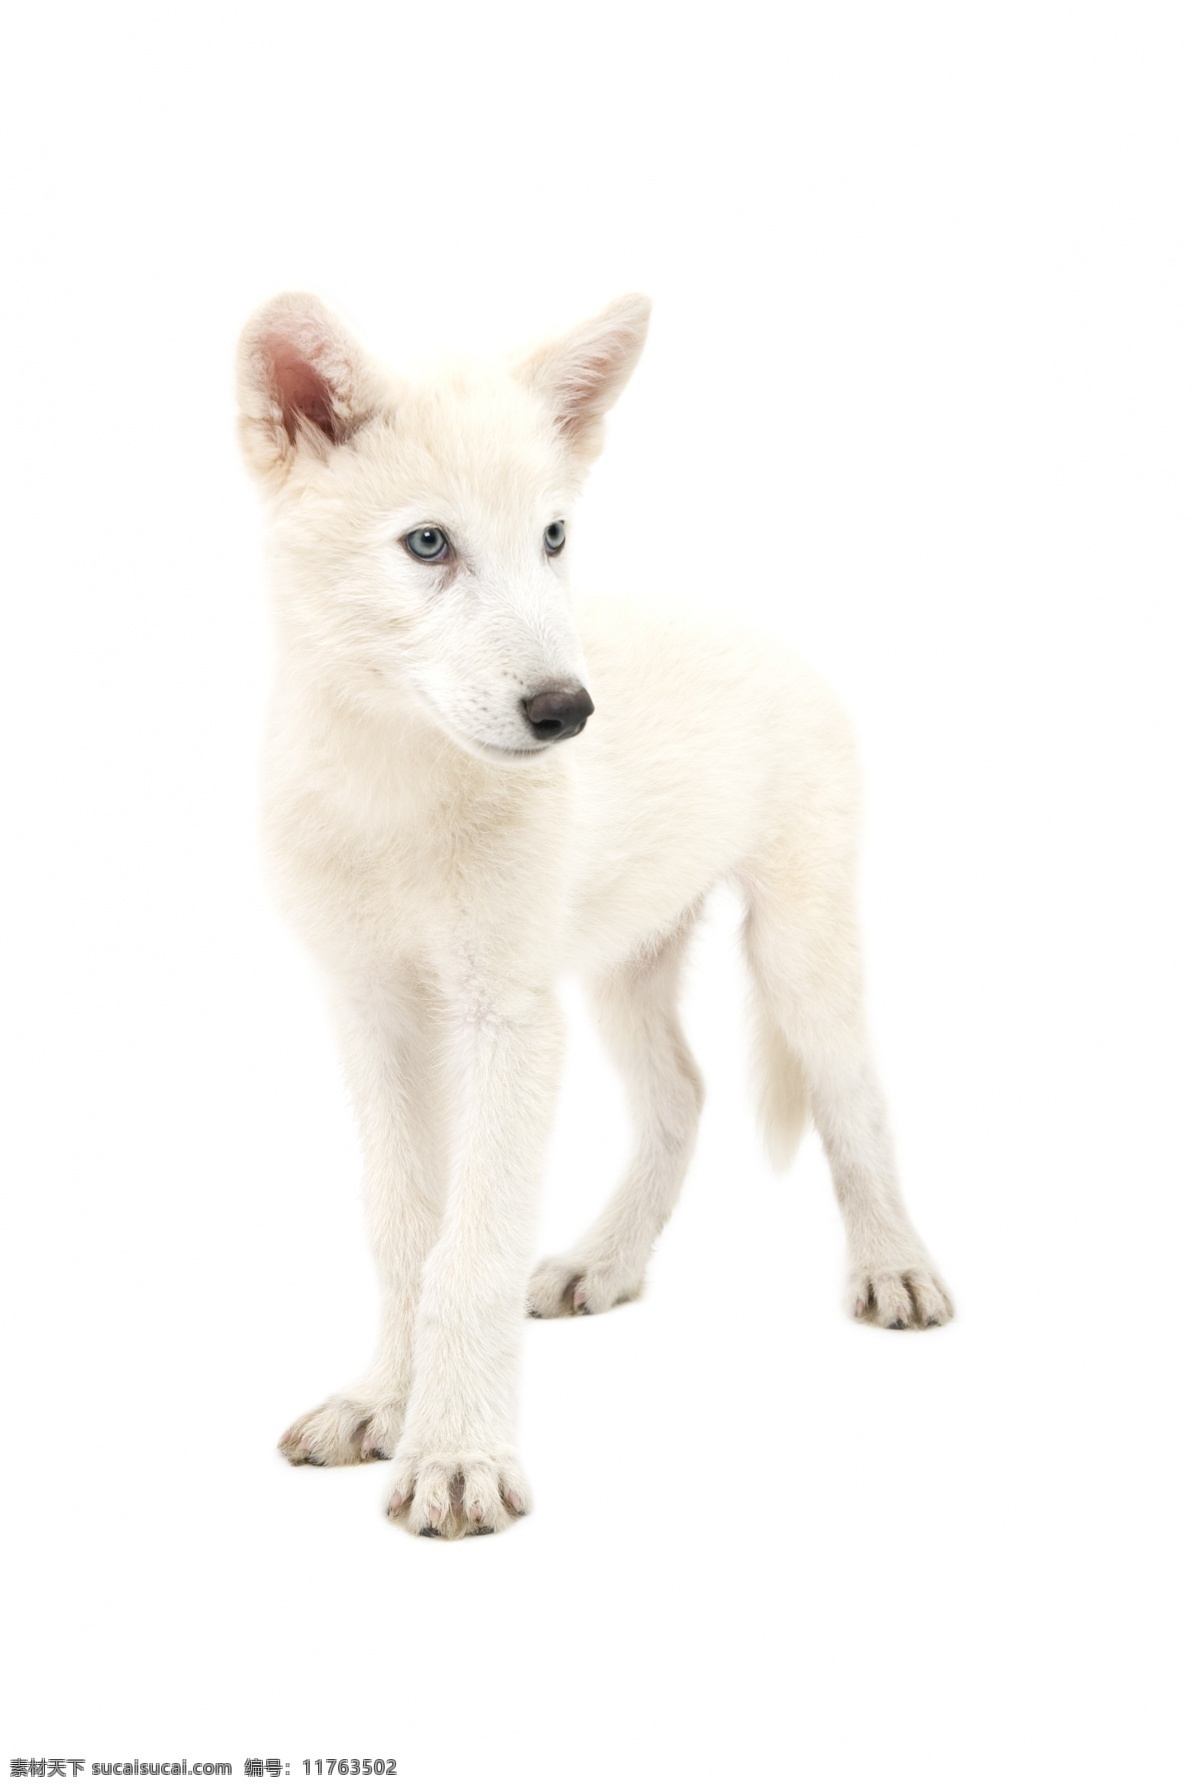 白狼 狼 北极狼 白色 毛发 哺乳动物